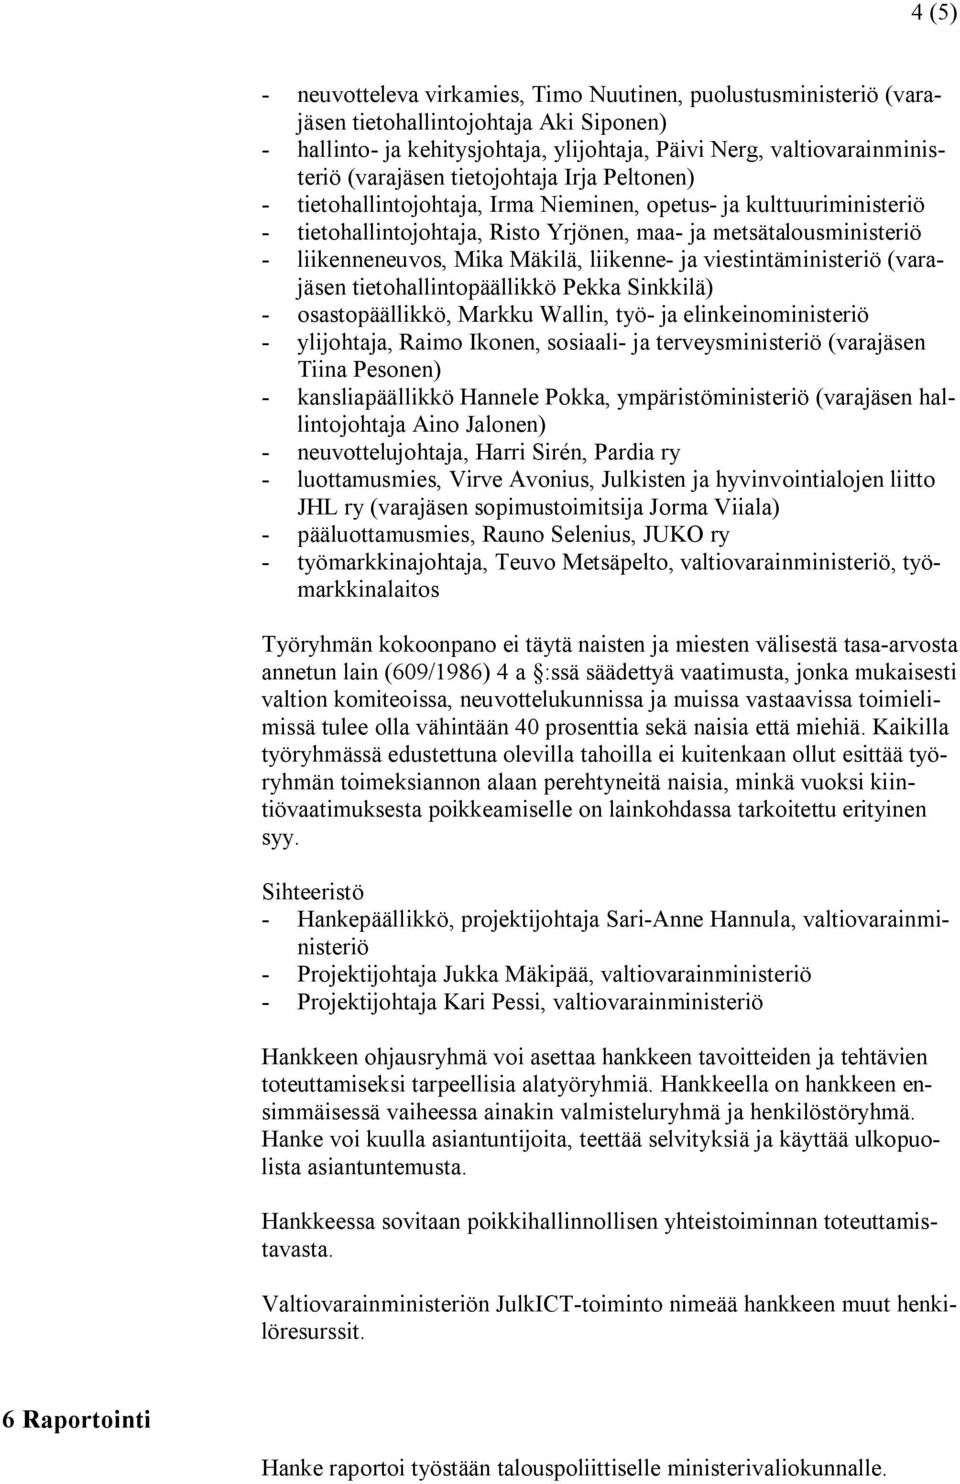 Mika Mäkilä, liikenne- ja viestintäministeriö (varajäsen tietohallintopäällikkö Pekka Sinkkilä) - osastopäällikkö, Markku Wallin, työ- ja elinkeinoministeriö - ylijohtaja, Raimo Ikonen, sosiaali- ja